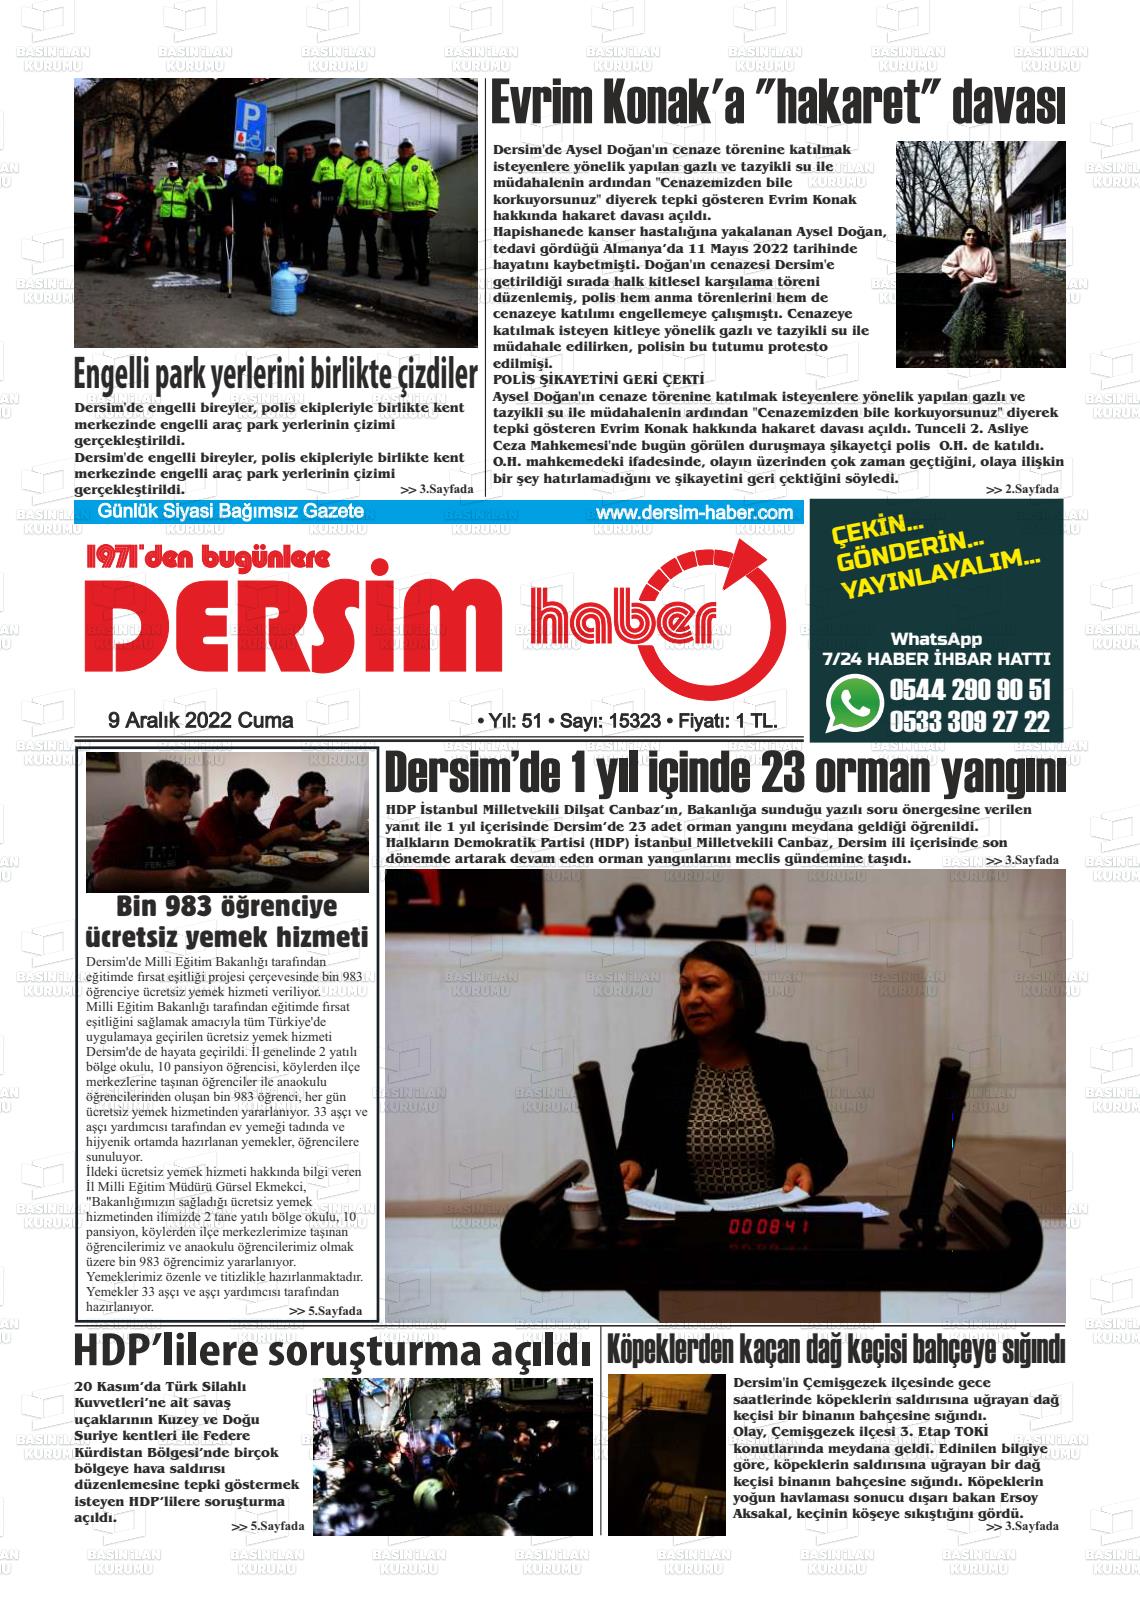 09 Aralık 2022 DERSİM HABER Gazete Manşeti